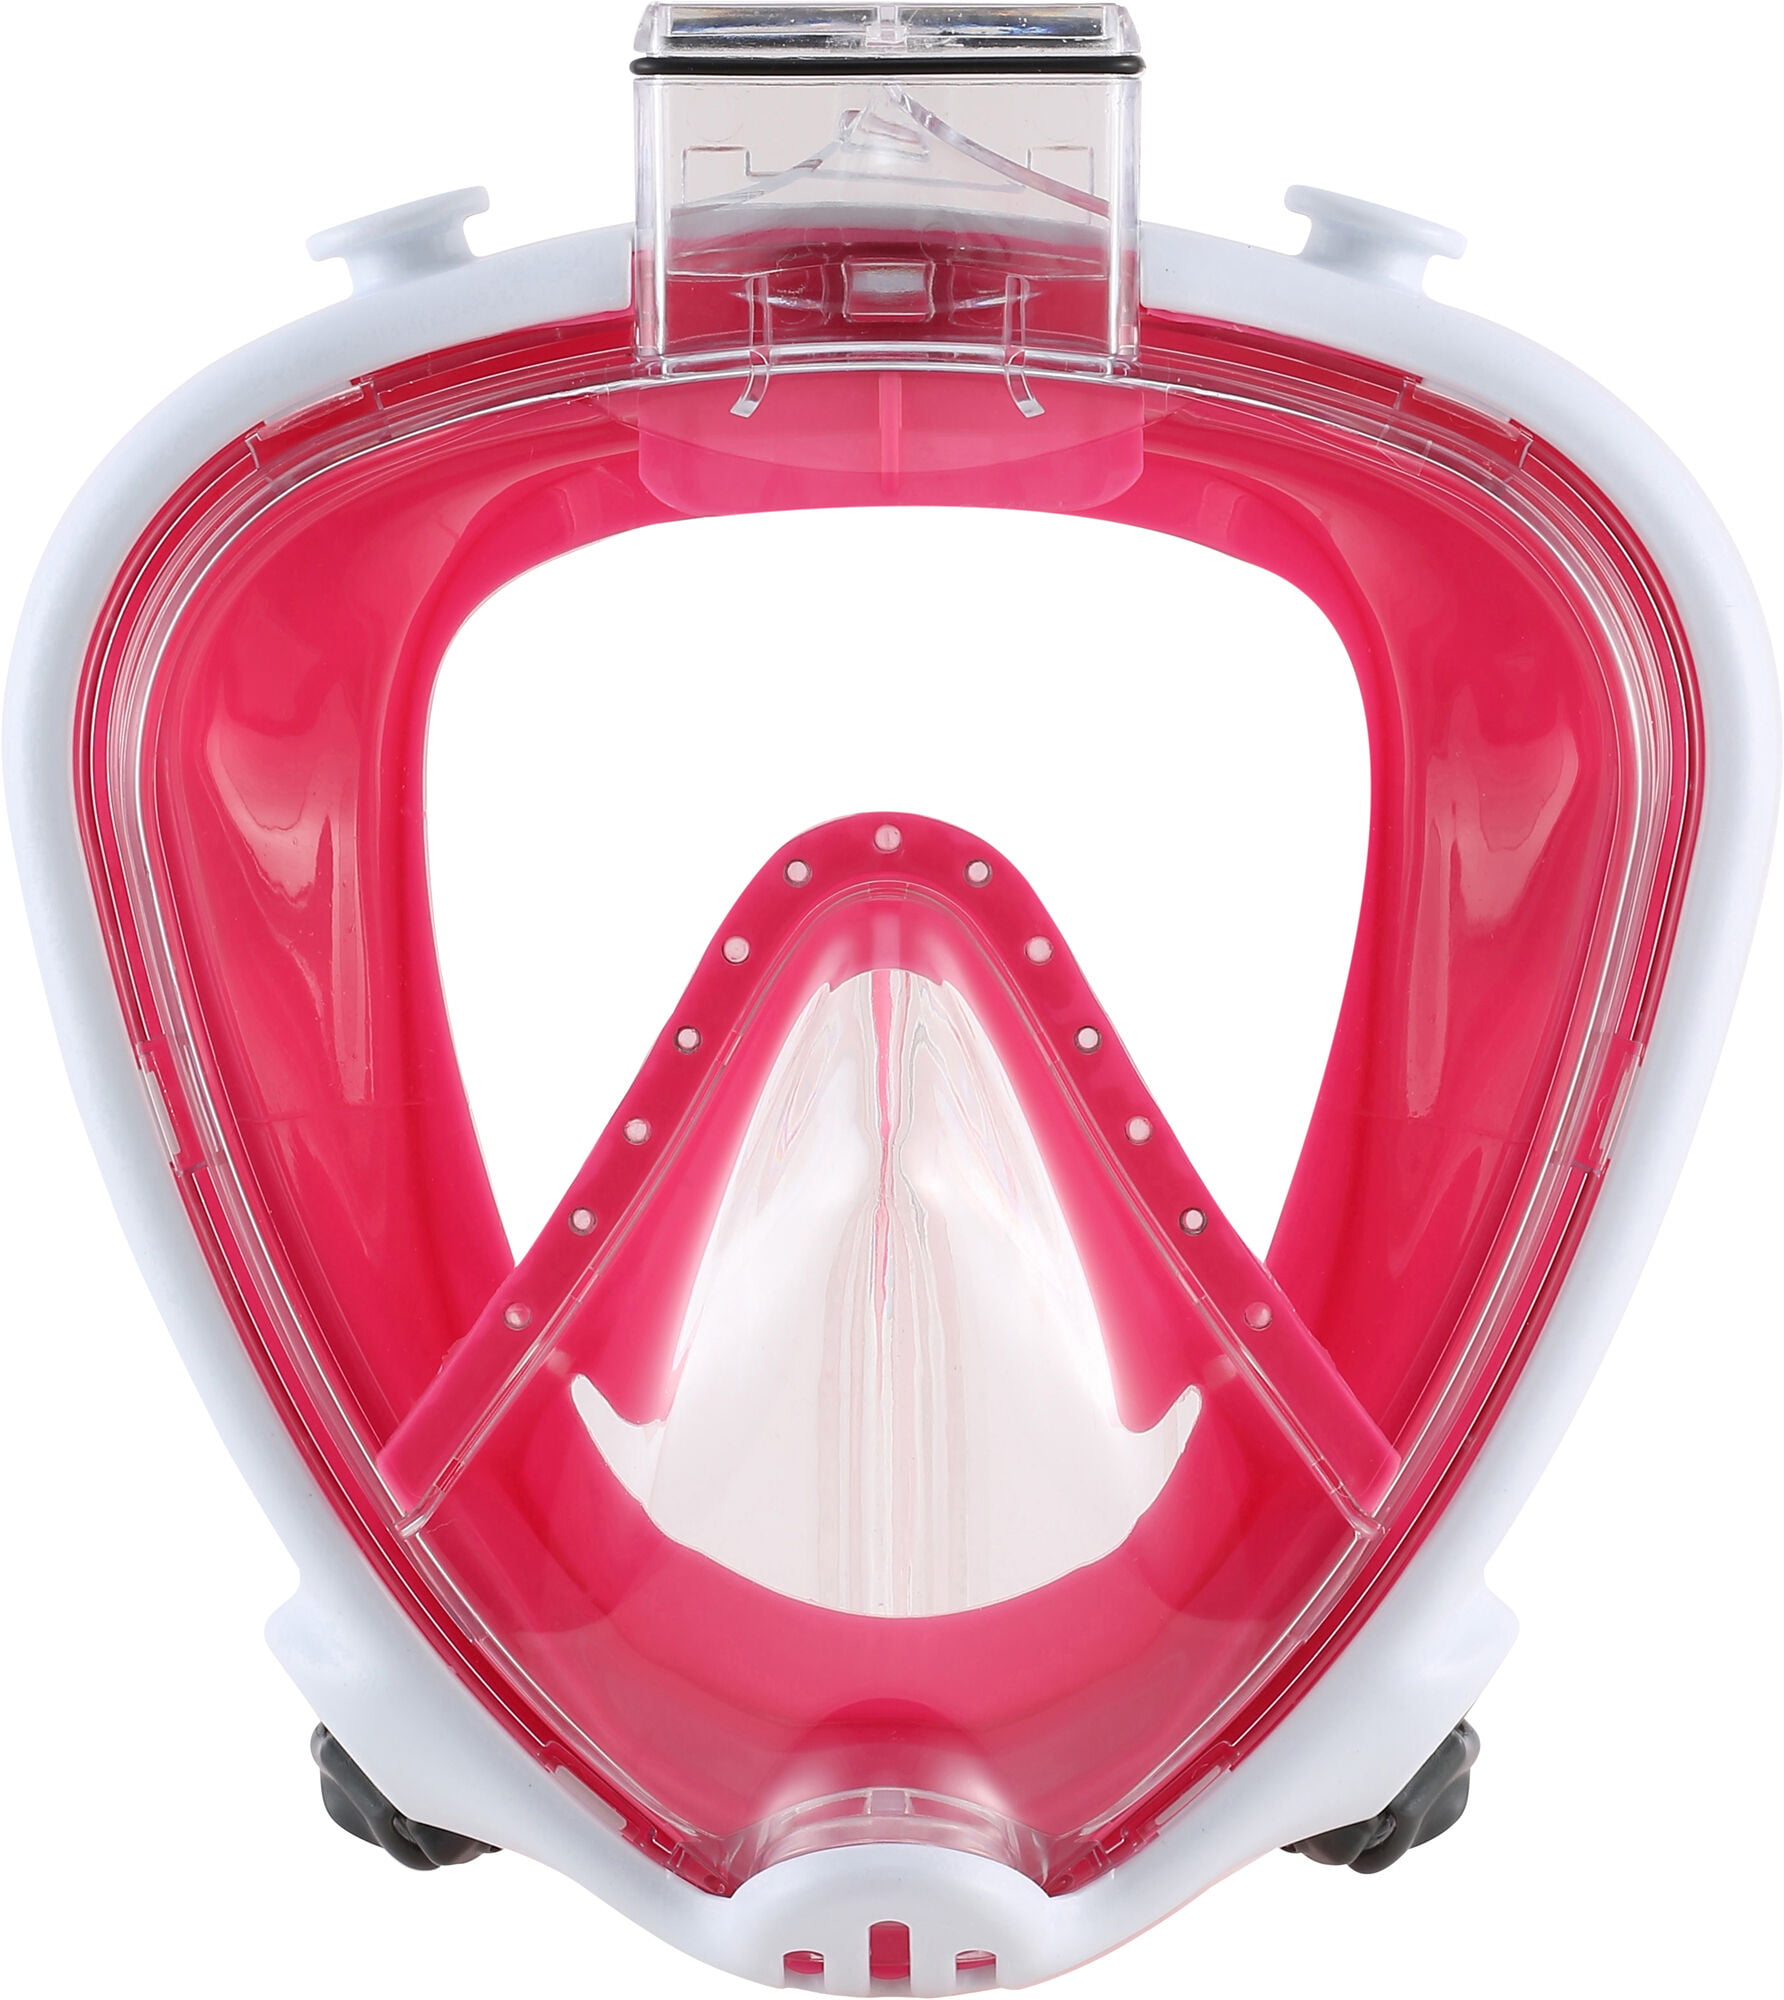 Bred vifte Ugle Lover og forskrifter Aqua Lung Smart Snorkel Jr Full Face Mask, XS/S - Walmart.com